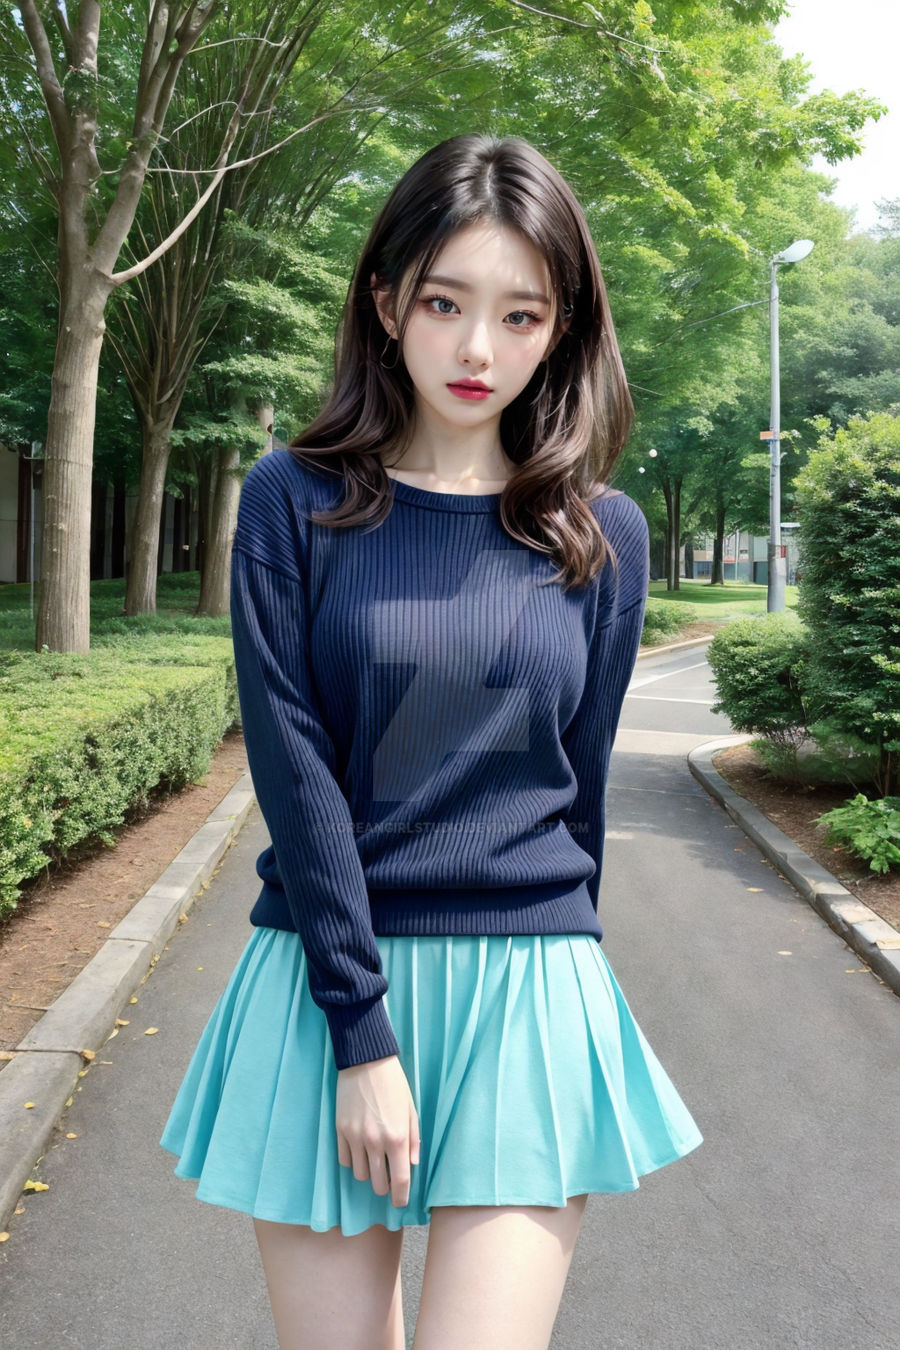 Korean girl lookbook by Koreangirlstudio on DeviantArt